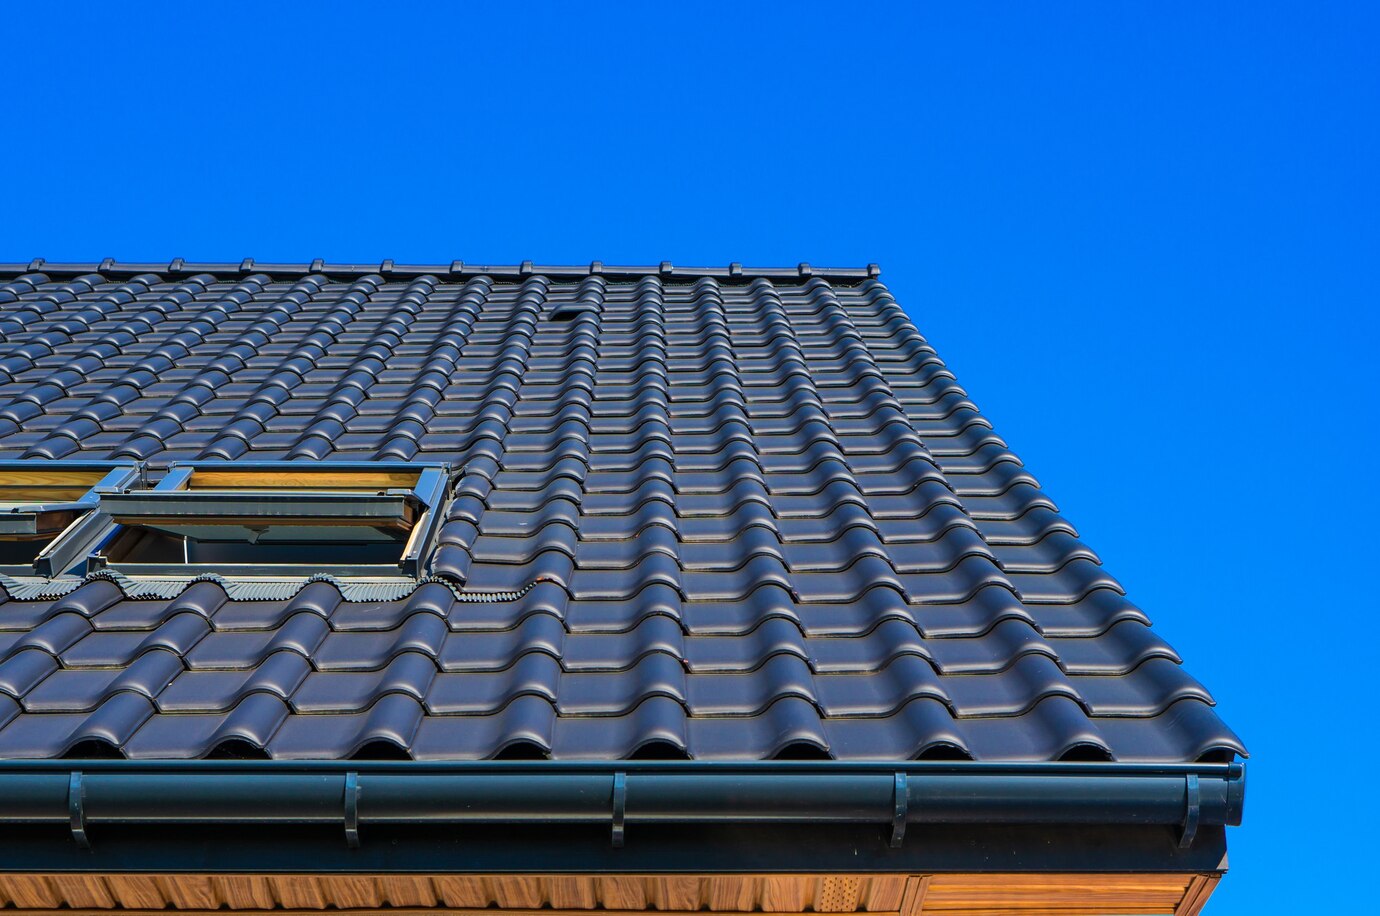 plan-rapproche-faible-angle-vertical-du-toit-noir-immeuble_181624-1065